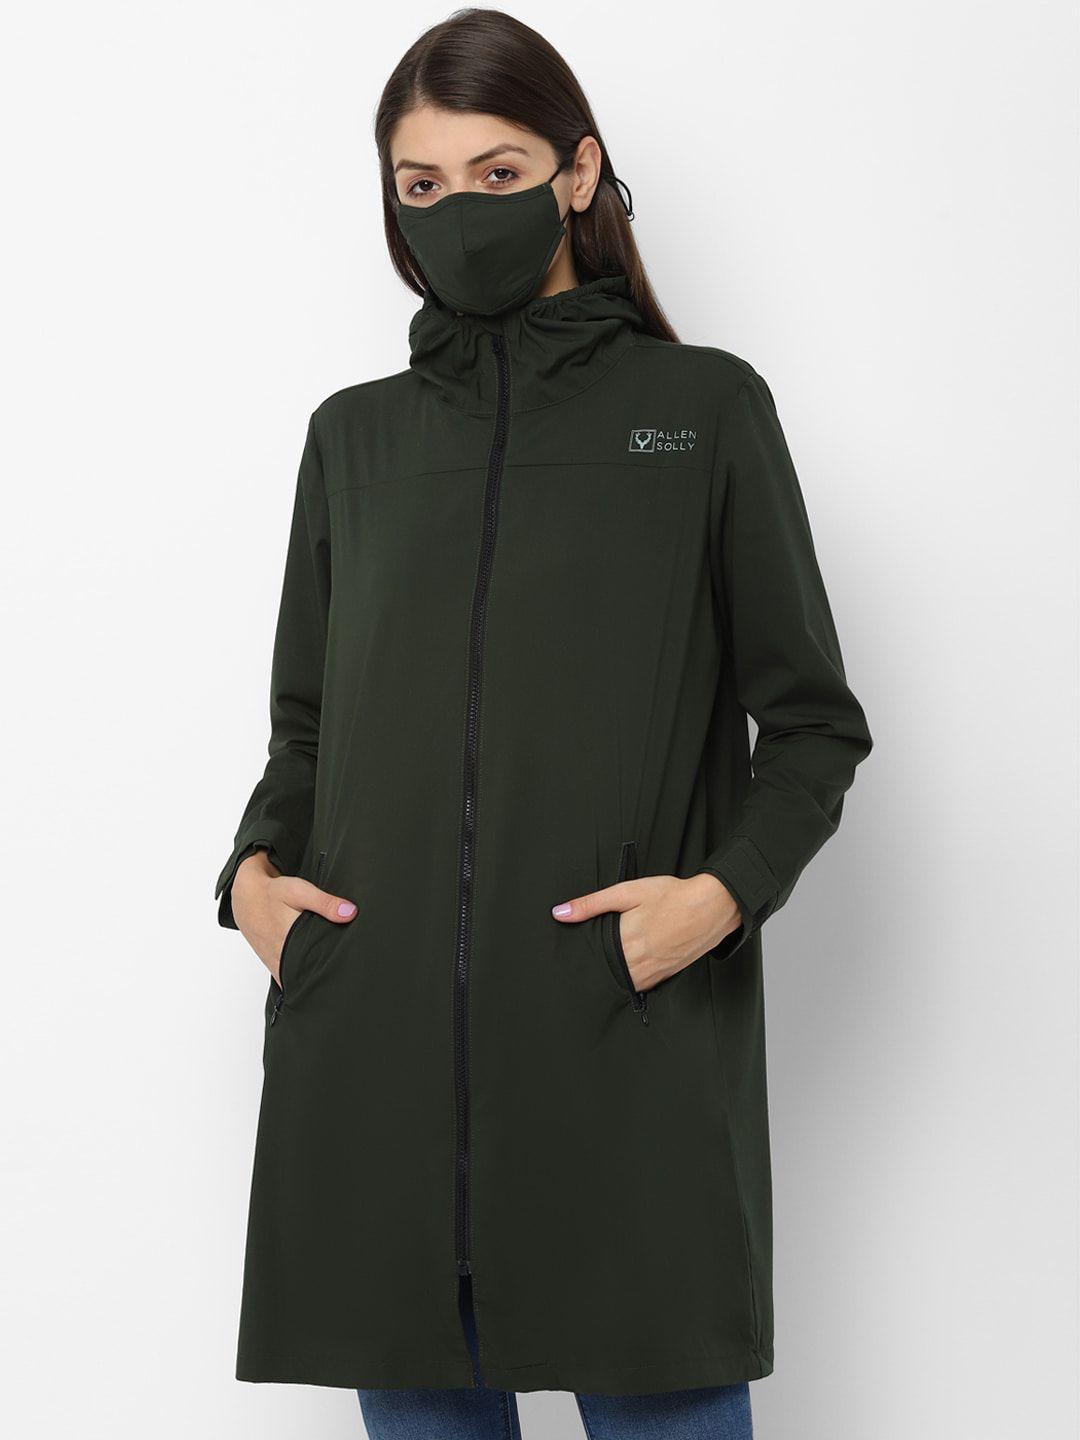 allen-solly-woman-women-olive-green-solid-longline-parka-jacket